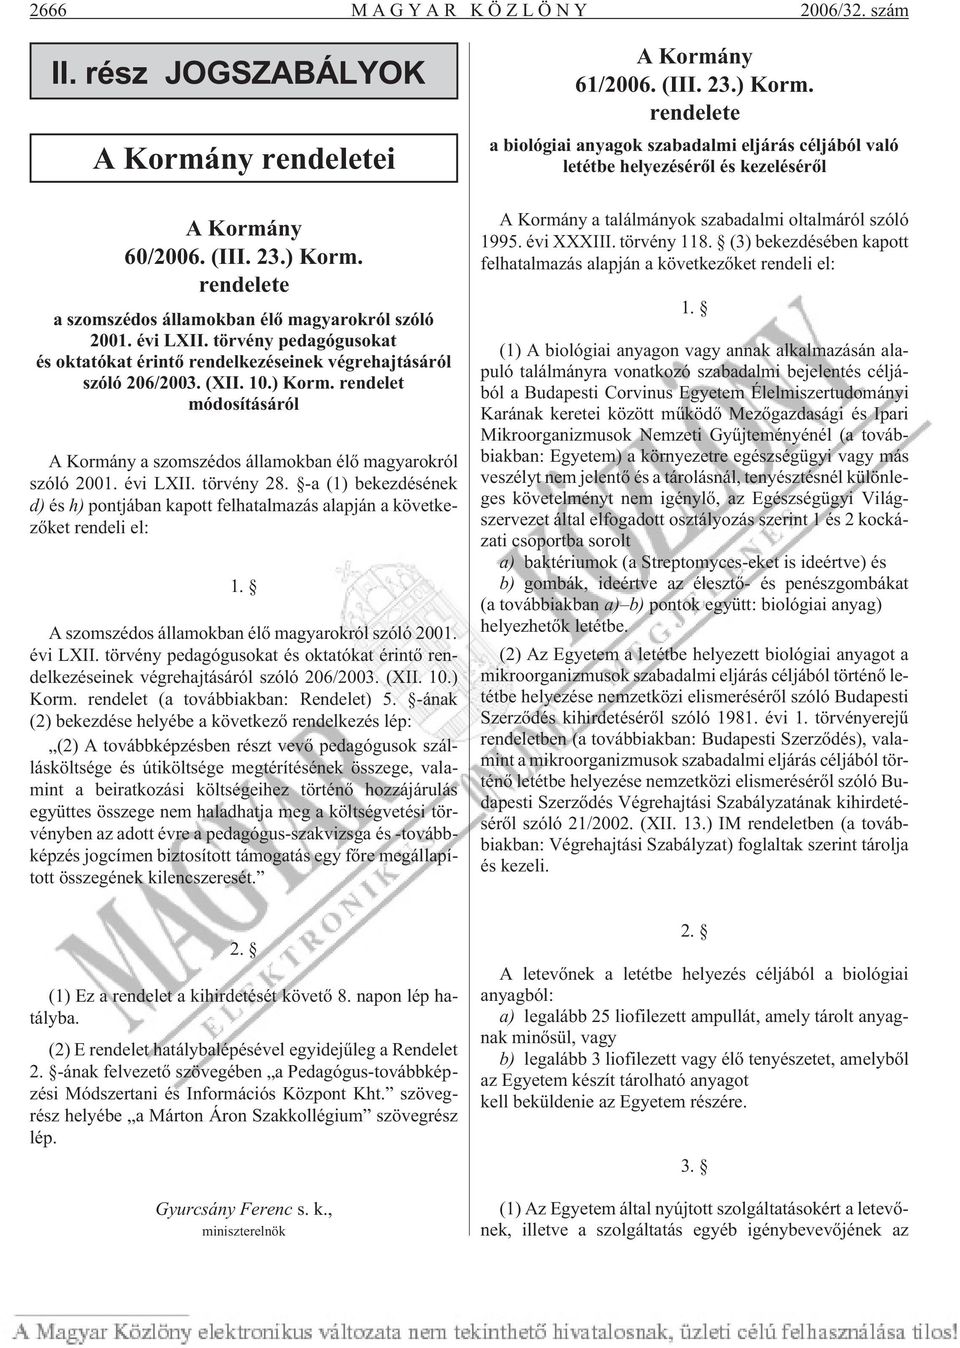 évi LXII. törvény 28. -a (1) bekezdésének d) és h) pontjában kapott felhatalmazás alapján a következõket rendeli el: 1. A szomszédos államokban élõ magyarokról szóló 2001. évi LXII.